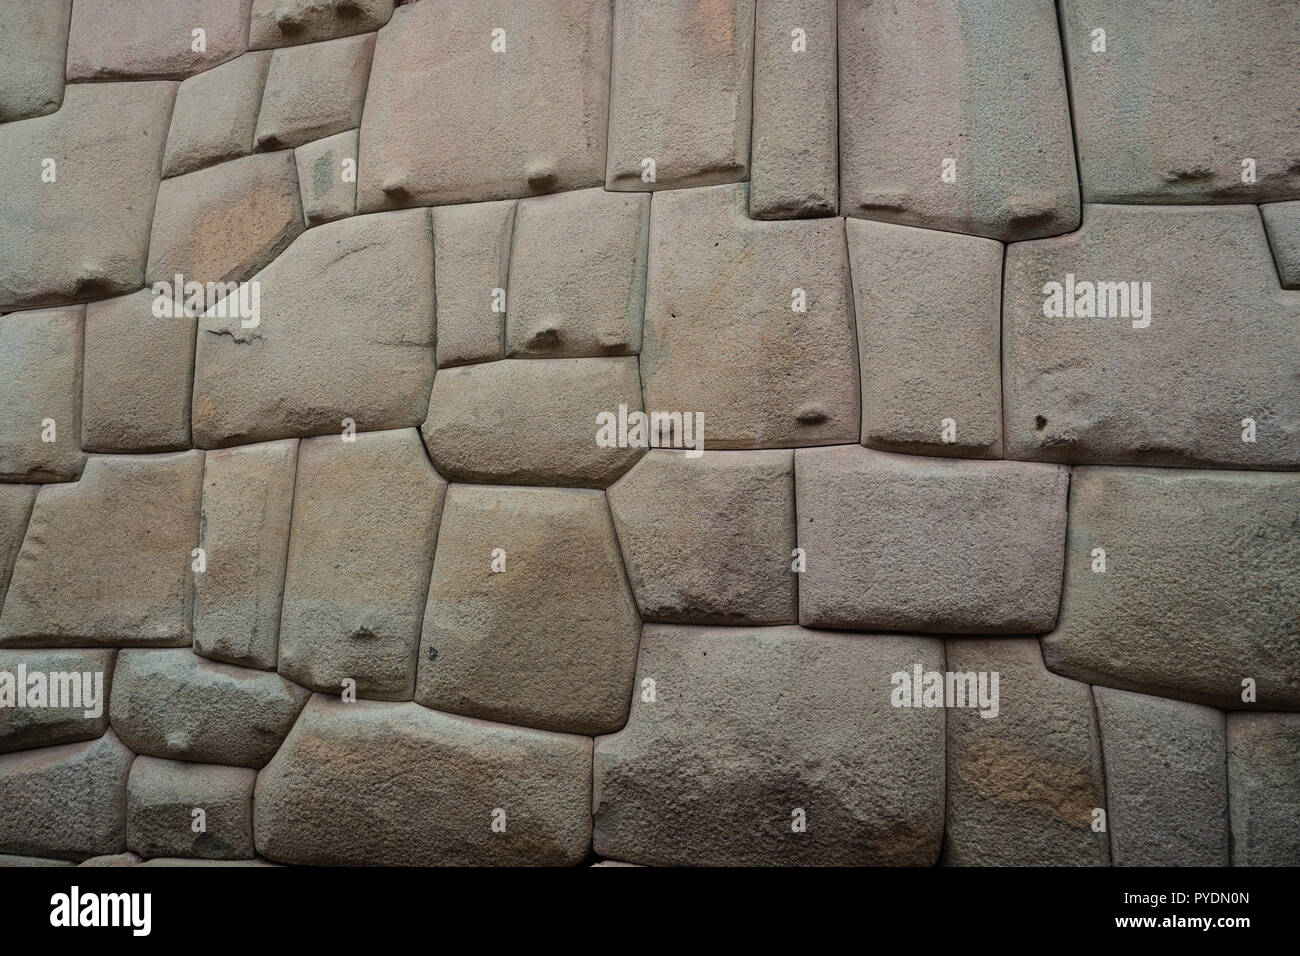 Inca ancien mur de pierre dans la ville de Cusco, Pérou. Travail de la pierre Banque D'Images